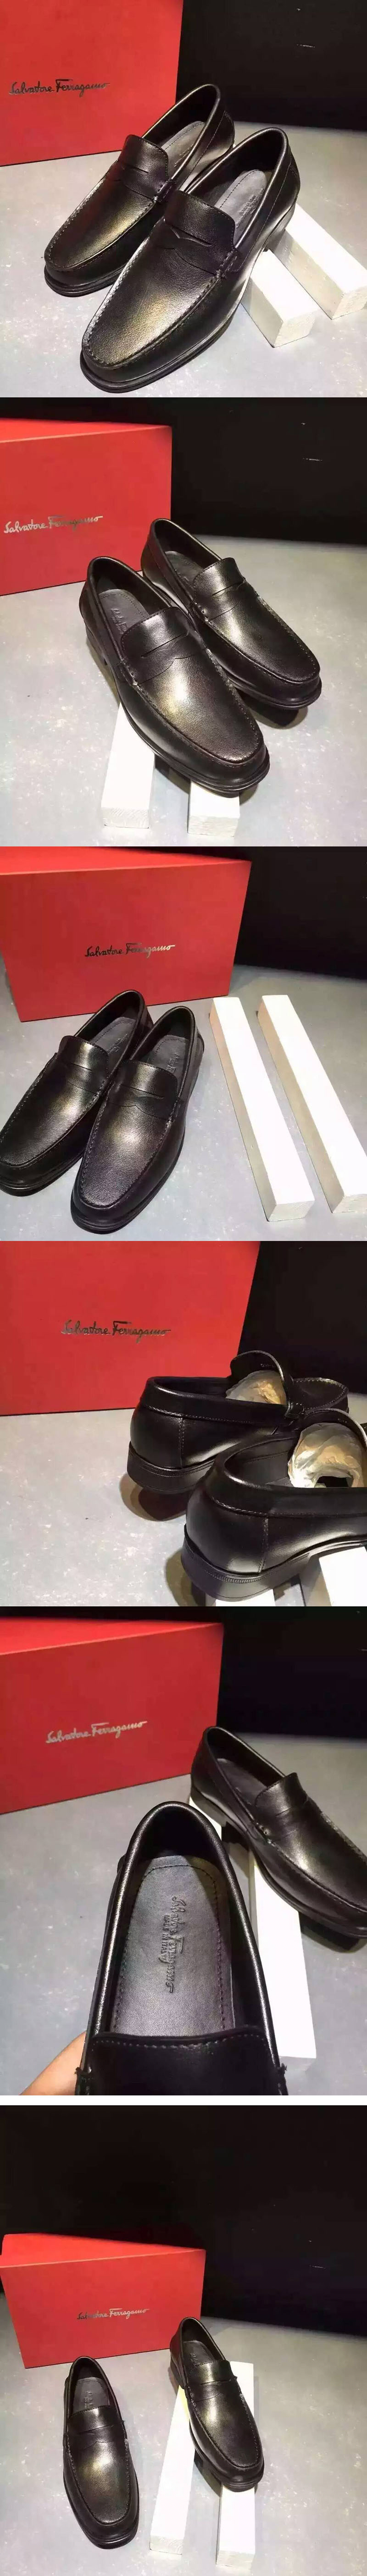 Replica Ferragamo Shoes